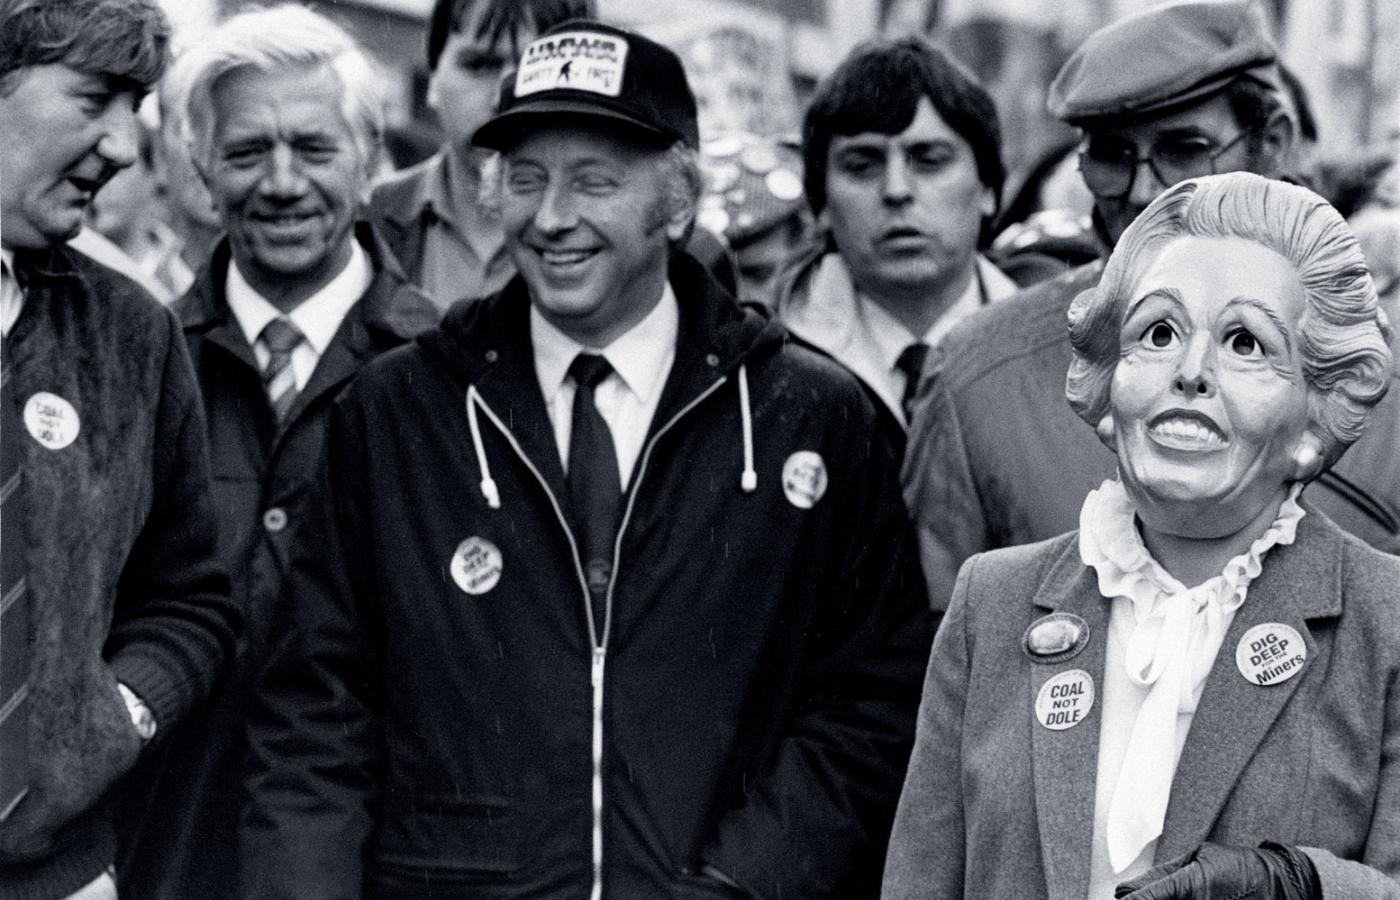 1984 r., szef Krajowego Związku Górników, Arthur Scargill obok kobiety w masce przedstawiającej Margaret Thatcher.